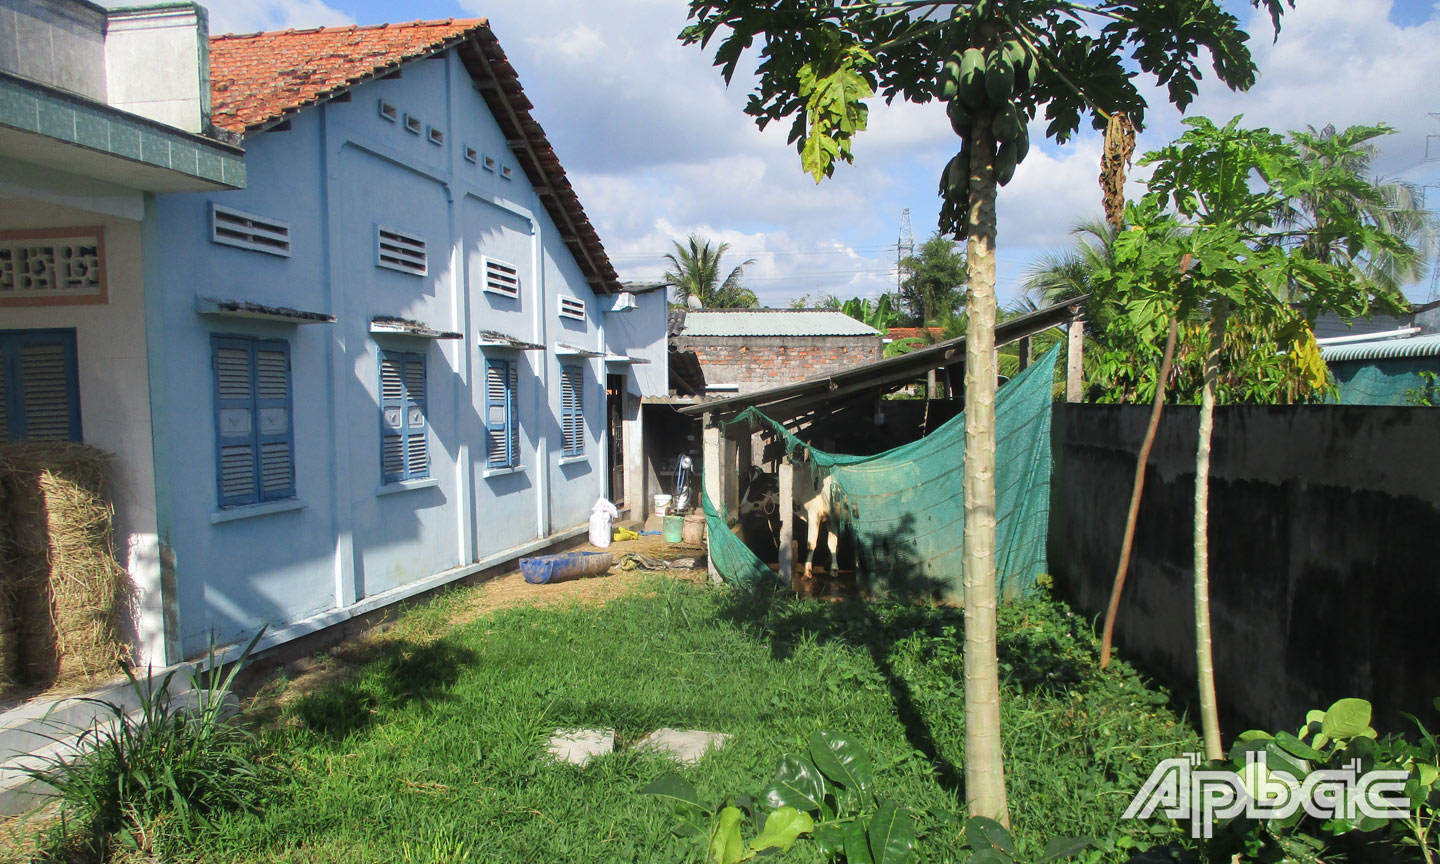 Chuồng nuôi bò sữa gây ô nhiễm môi trường của hộ ông T. ở Tổ nhân dân tự quản số 20, ấp Thân Bình, xã Thân Cửu Nghĩa.